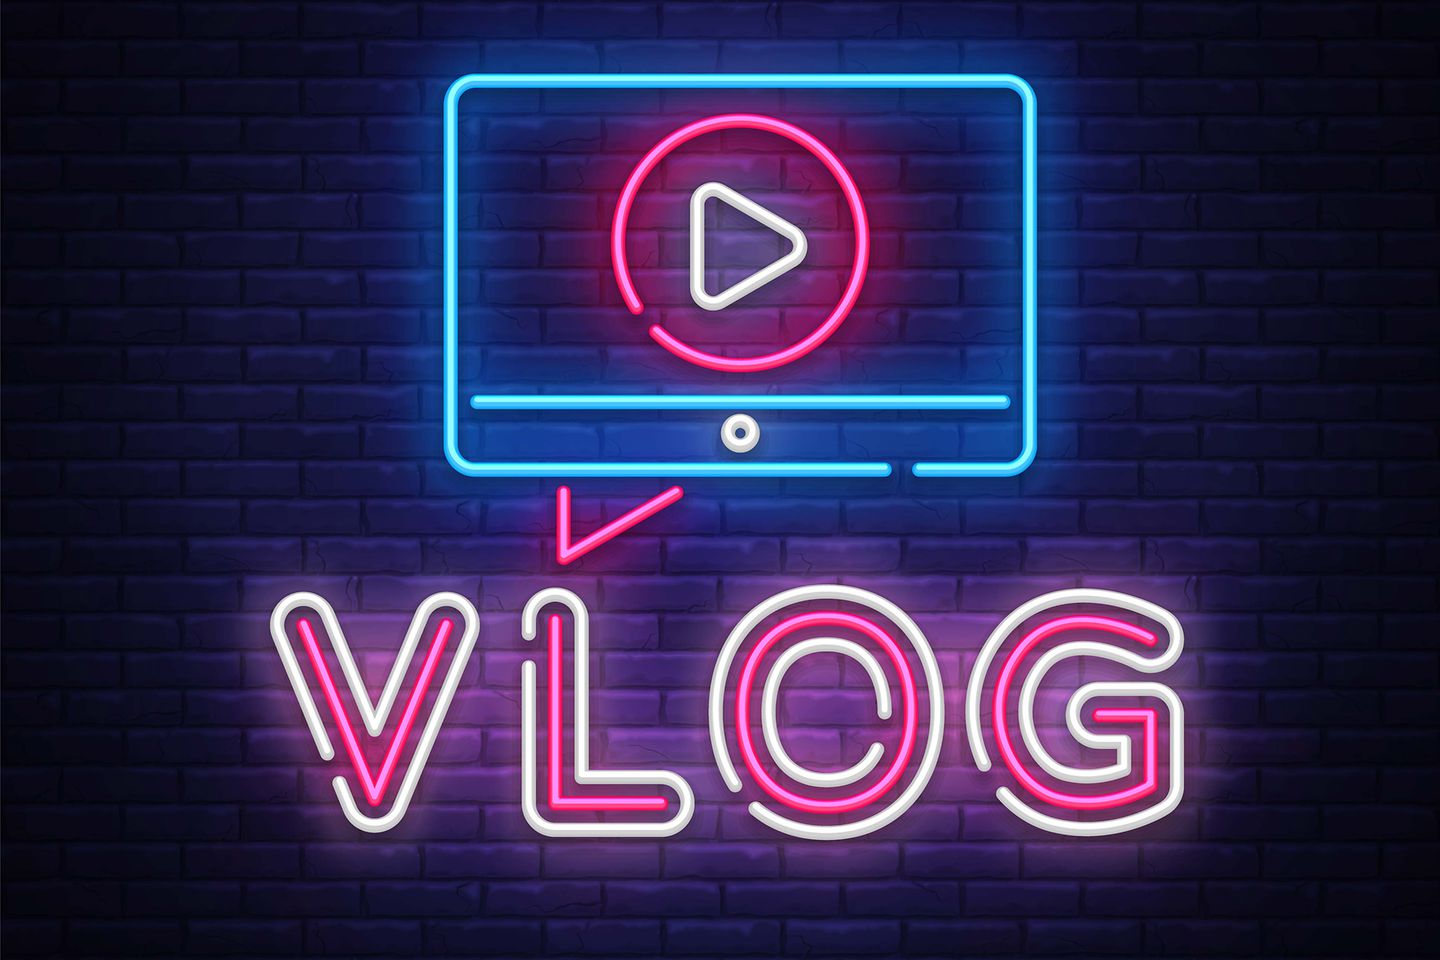 grafische Darstellung des Wortes Vlog in Form von Neonröhren